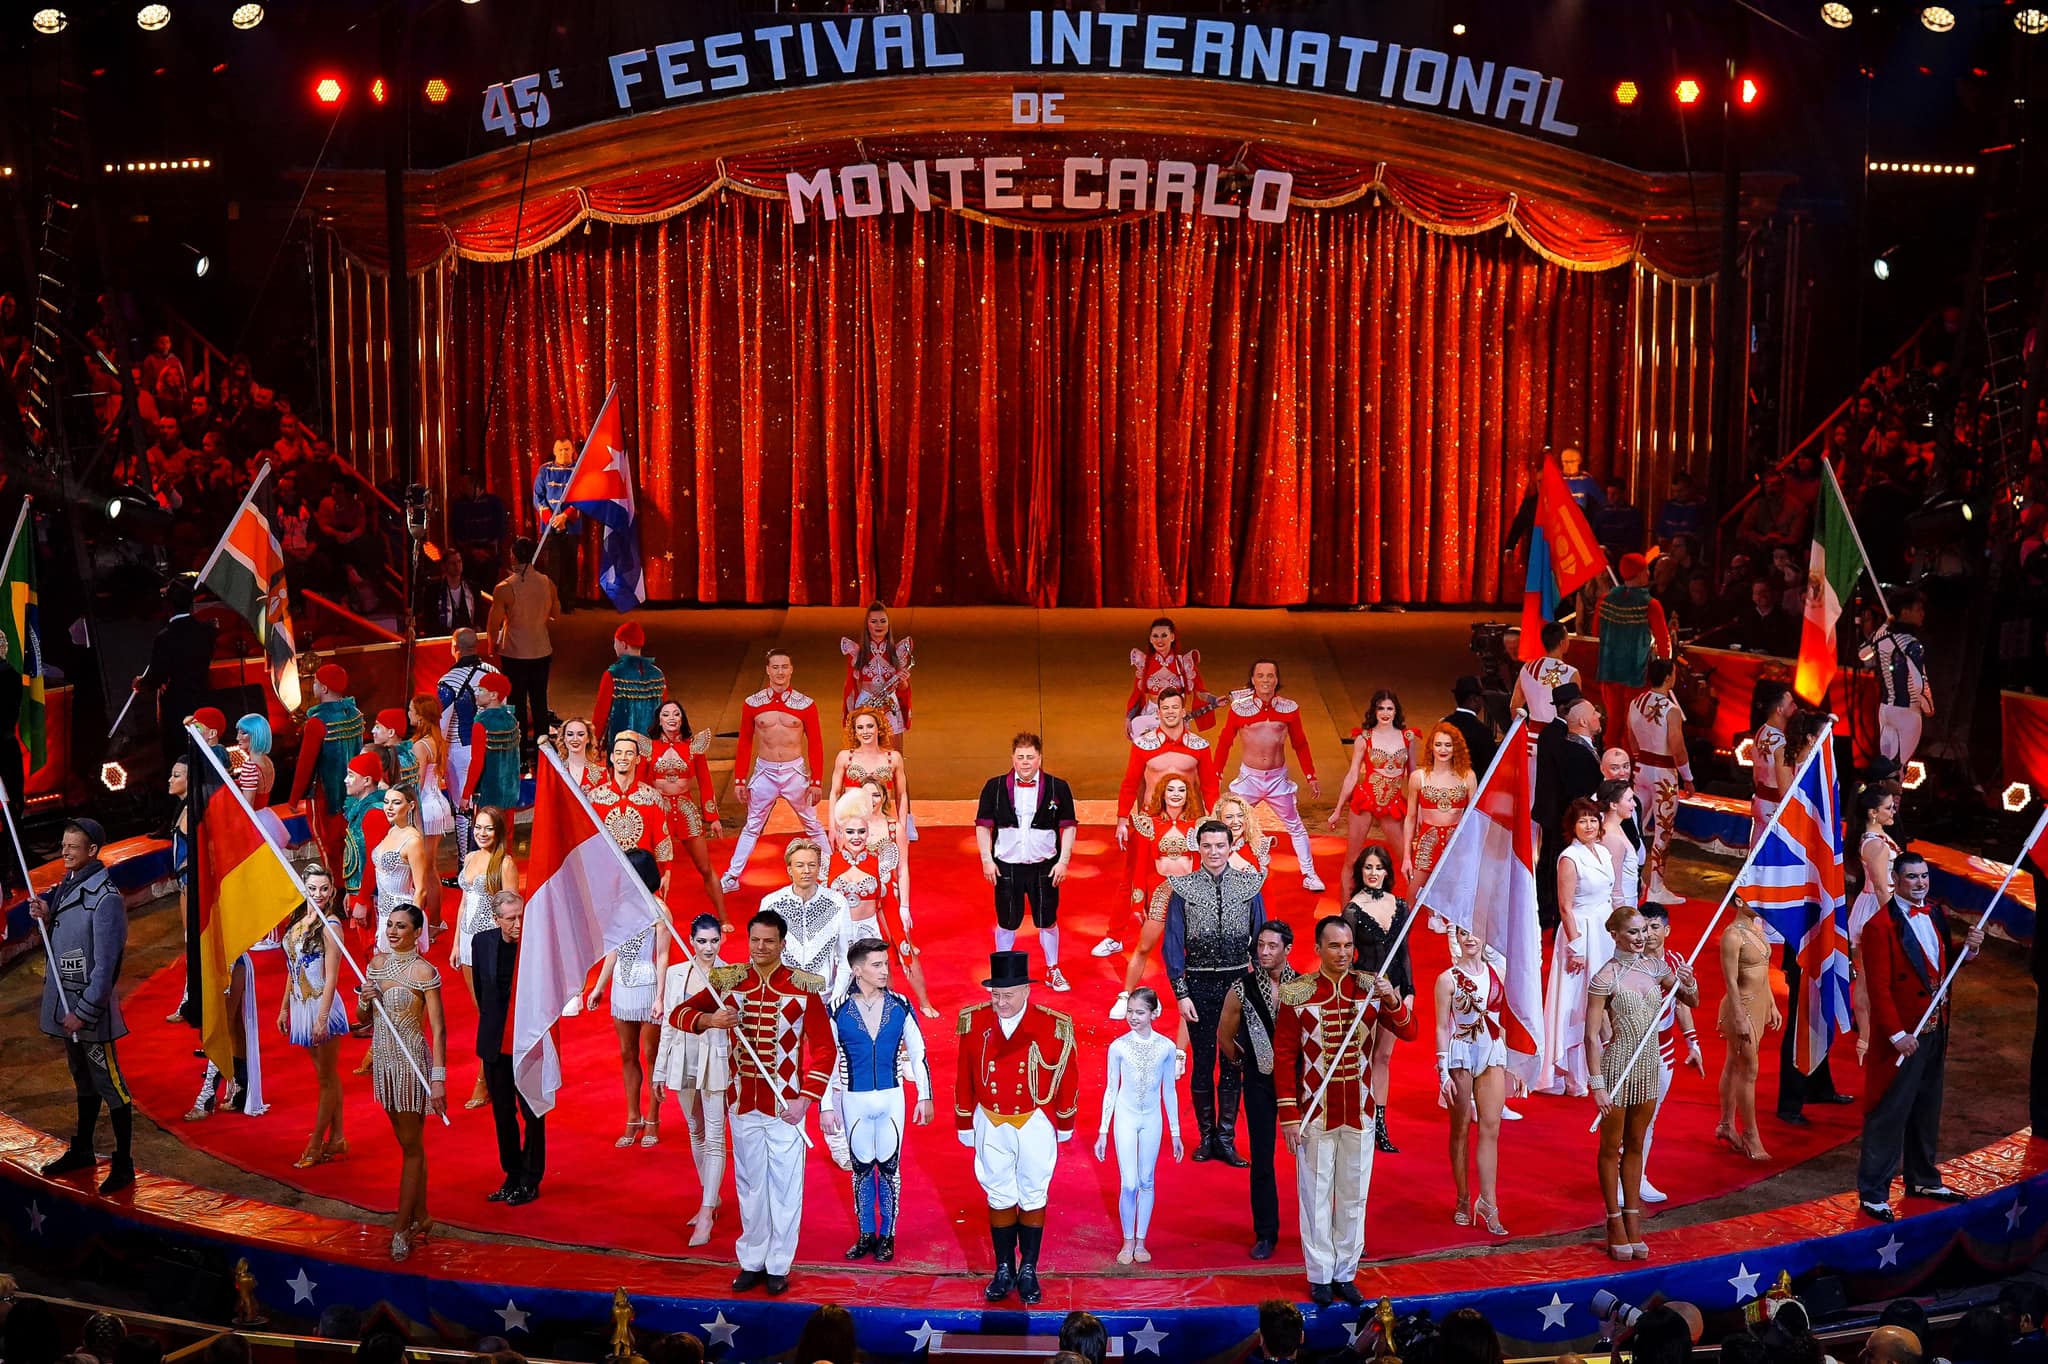 Ismerős sztárok a Monte-carlói Nemzetközi Cirkuszfesztiválon      